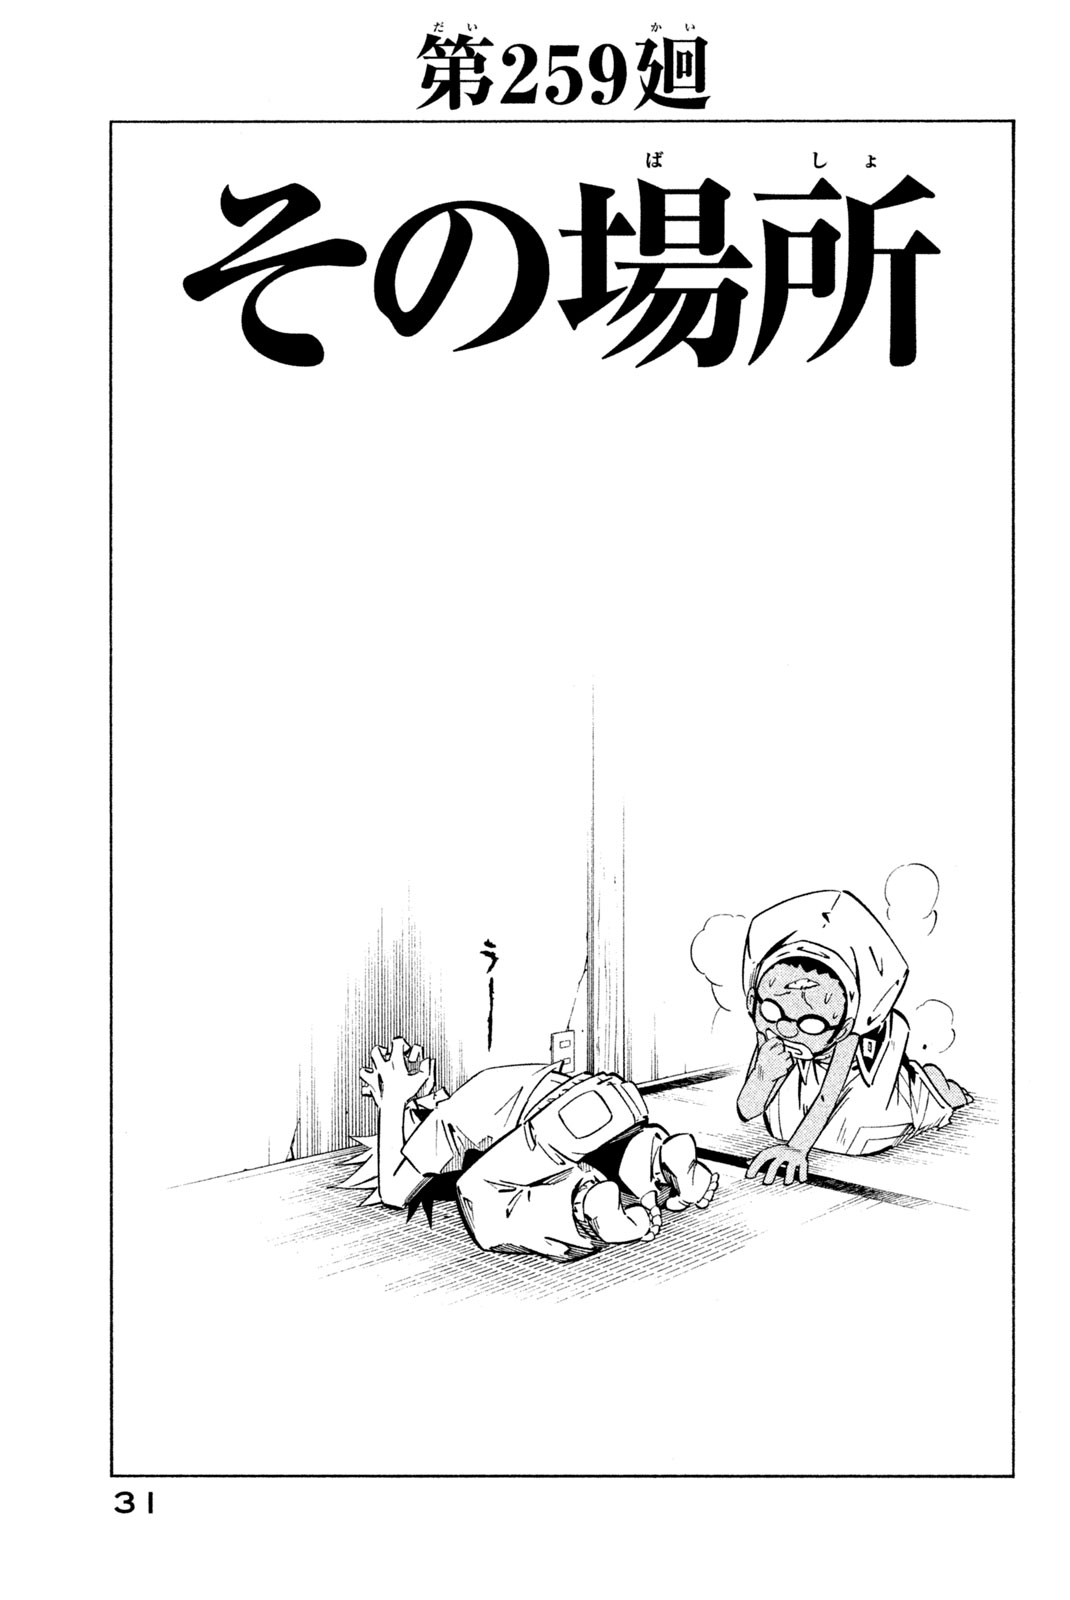 El rey shaman Król Szamanów Shaman King (Vua pháp thuật) シャーマンキング 第259話 - Page 3